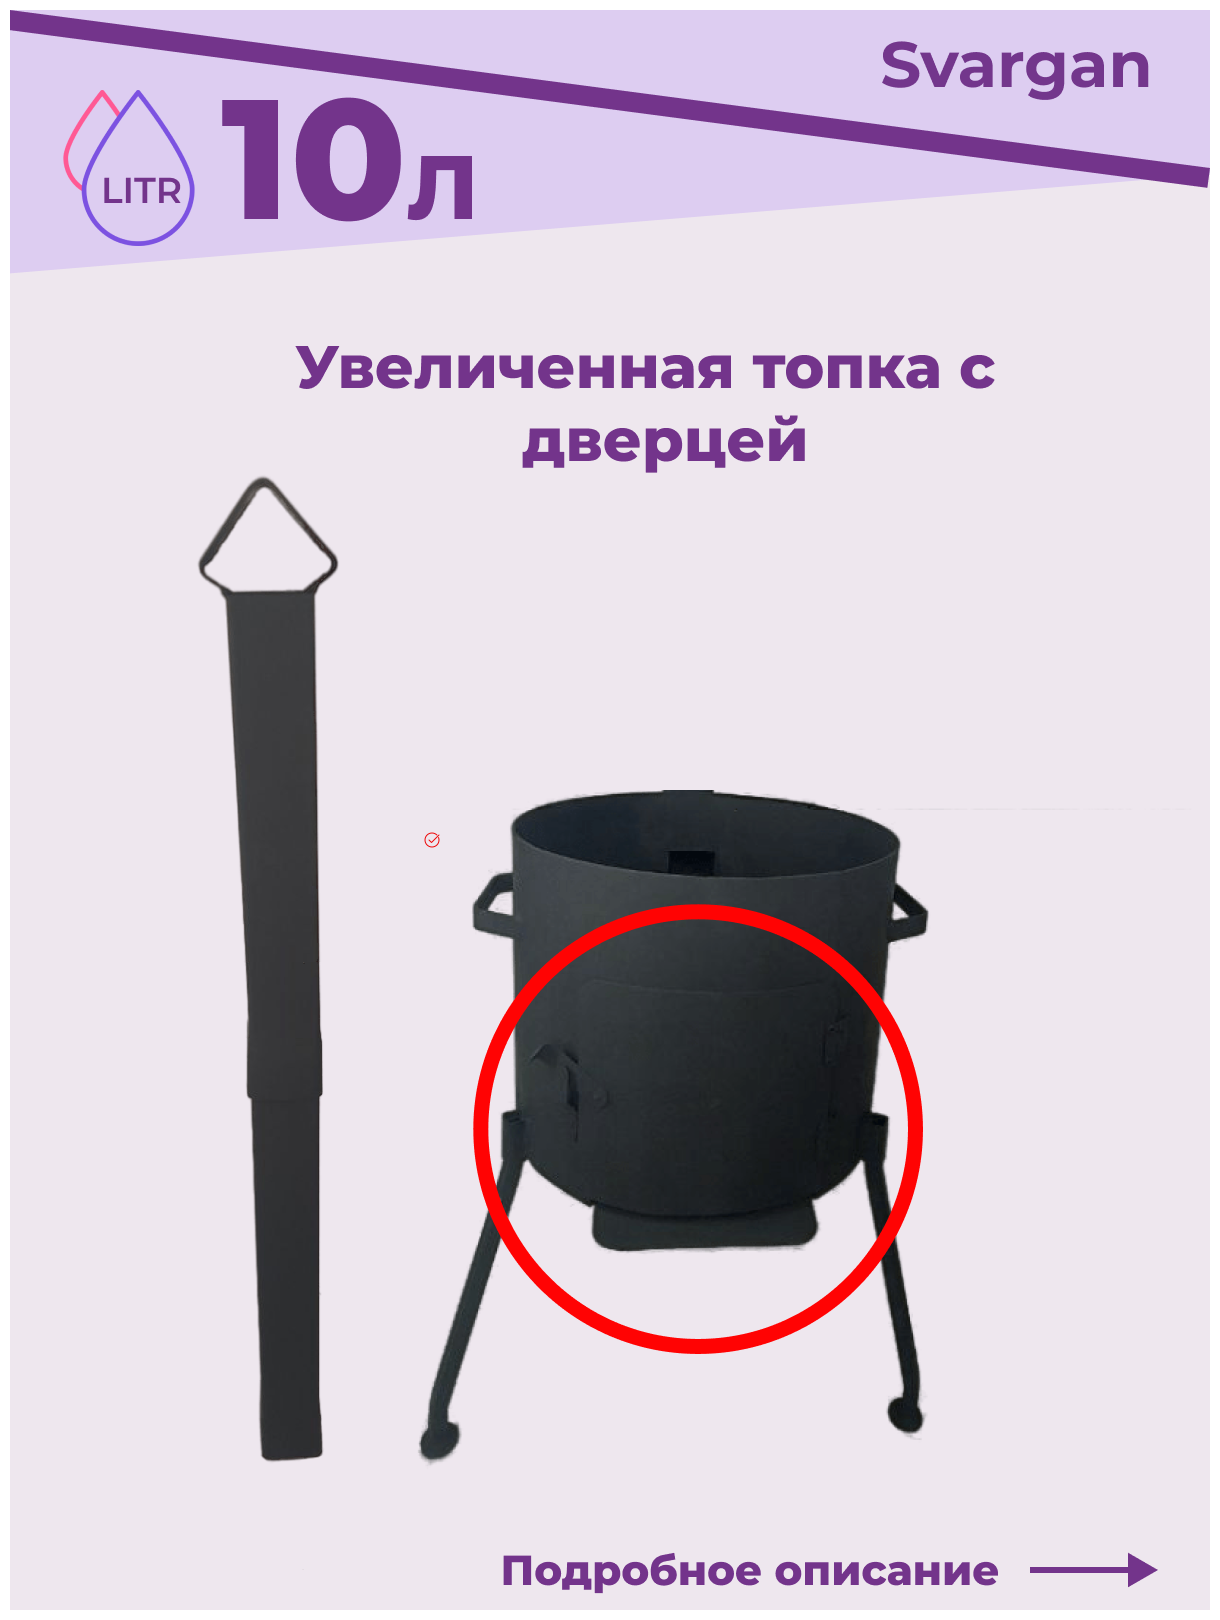 Печь с трубой и заслонкой в дымоходе + казан чугунный 10 литров узбекский с крышкой + шумовка половник и приправа в подарок